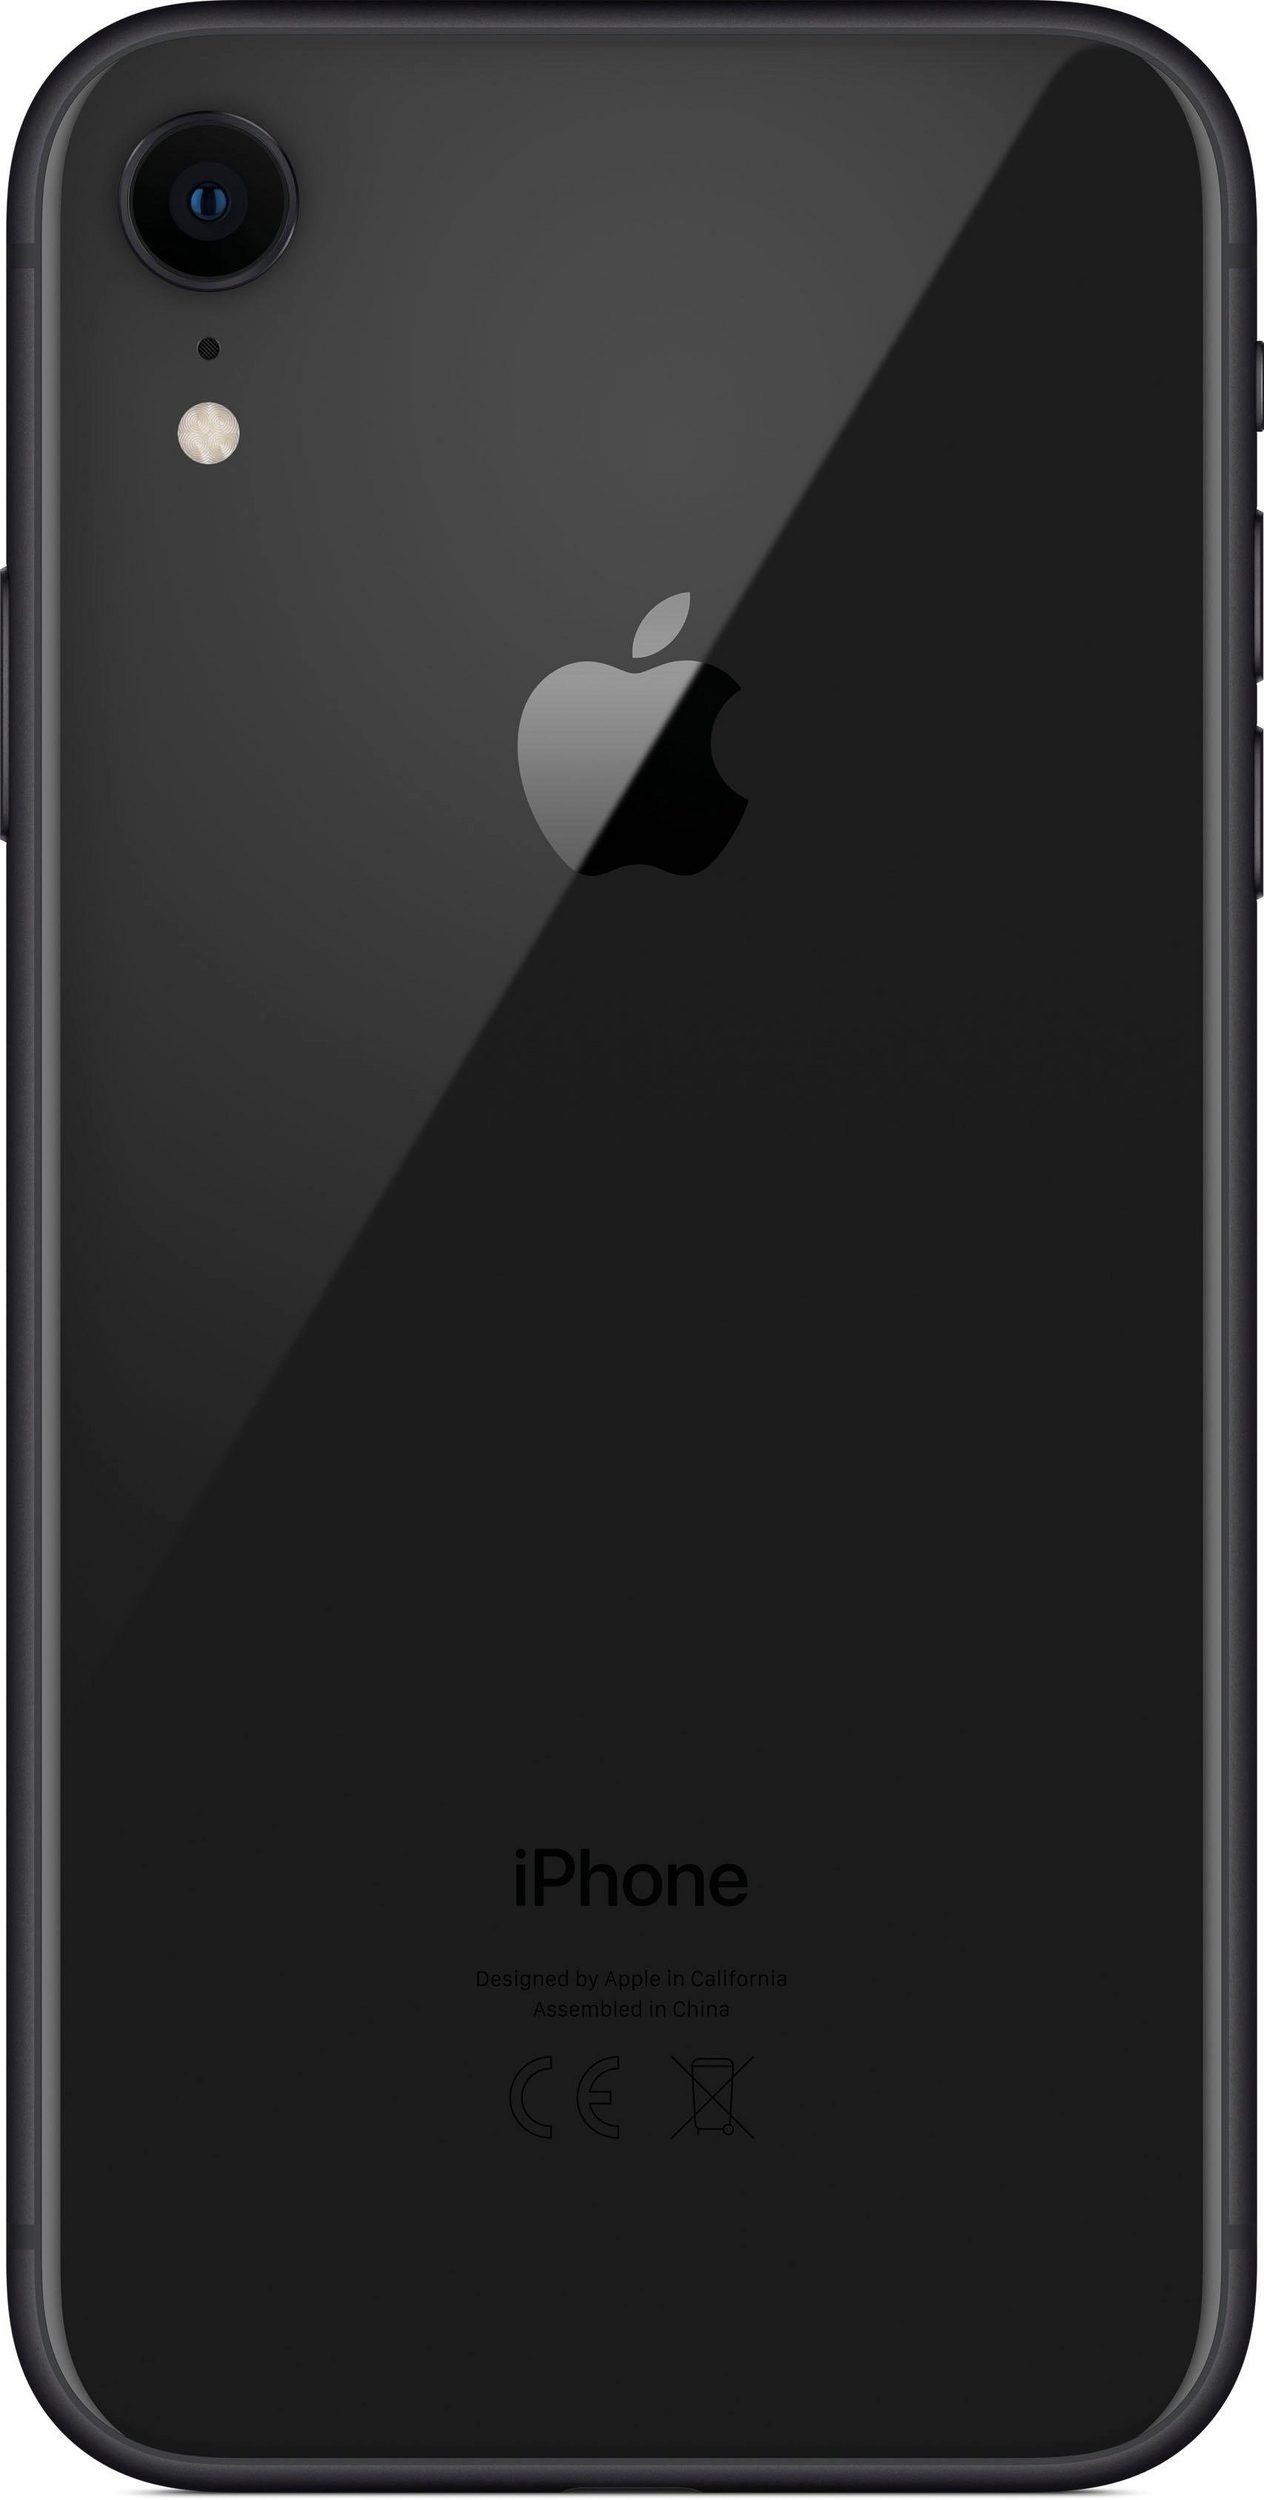 Bild von iPhone XR 64 GB schwarz